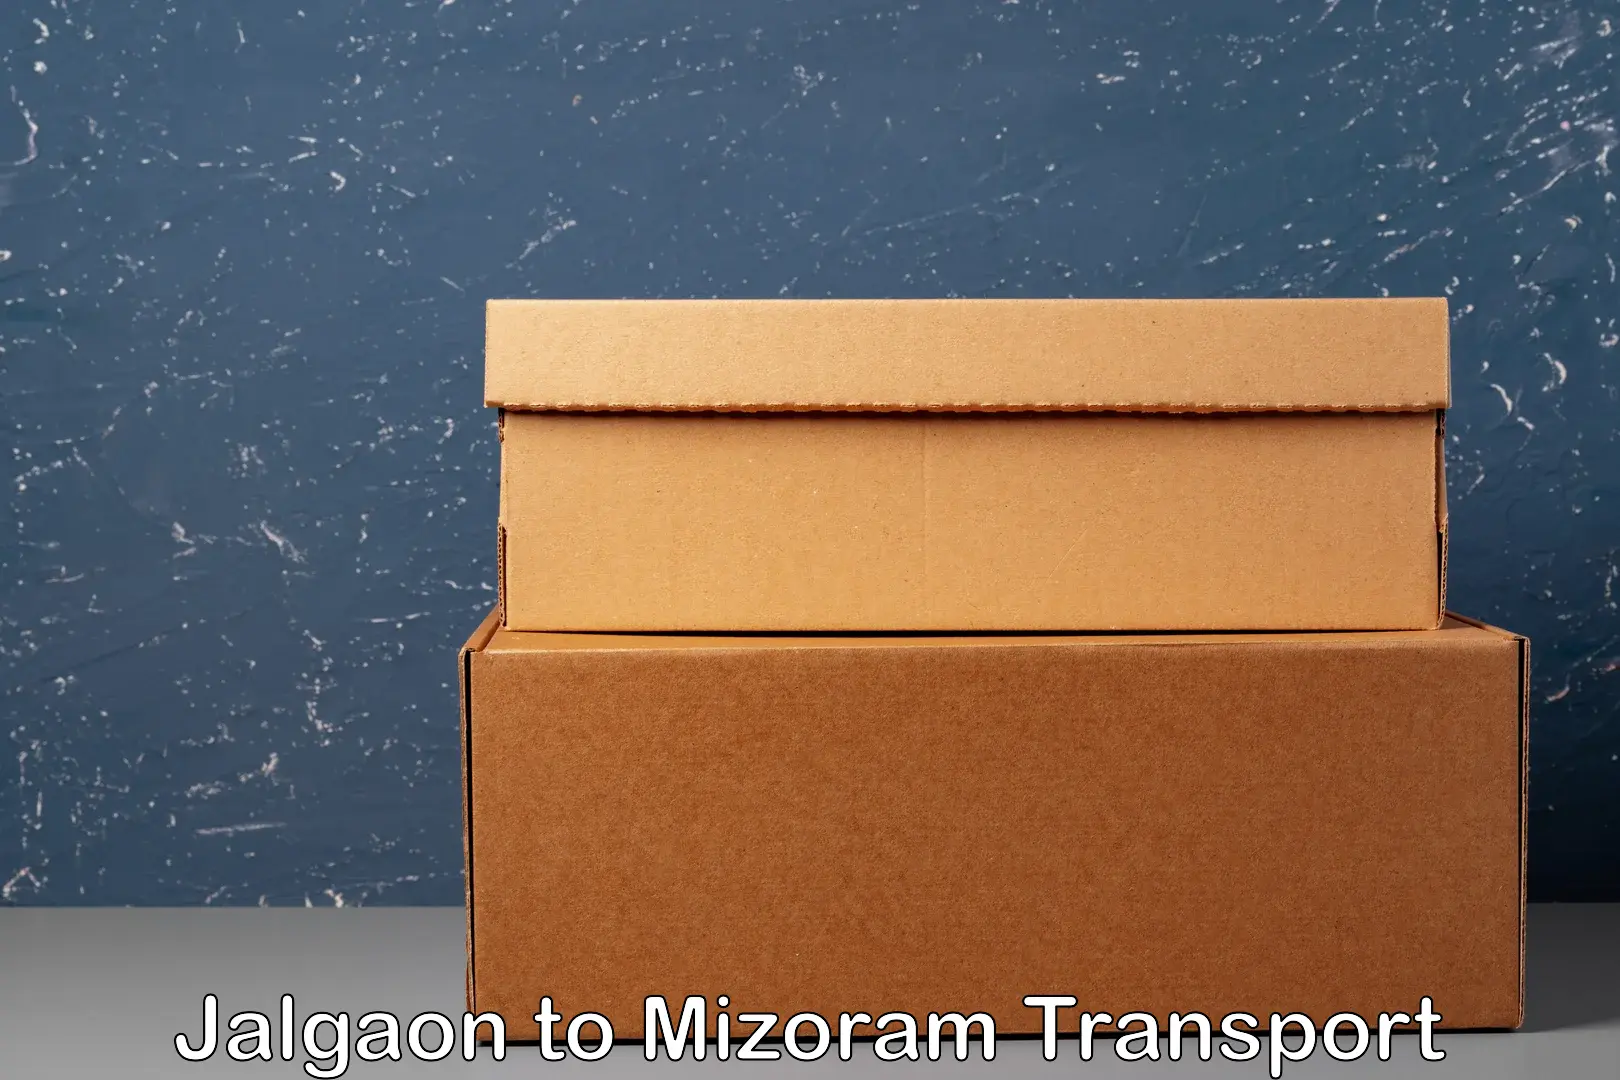 Online transport booking Jalgaon to Mizoram